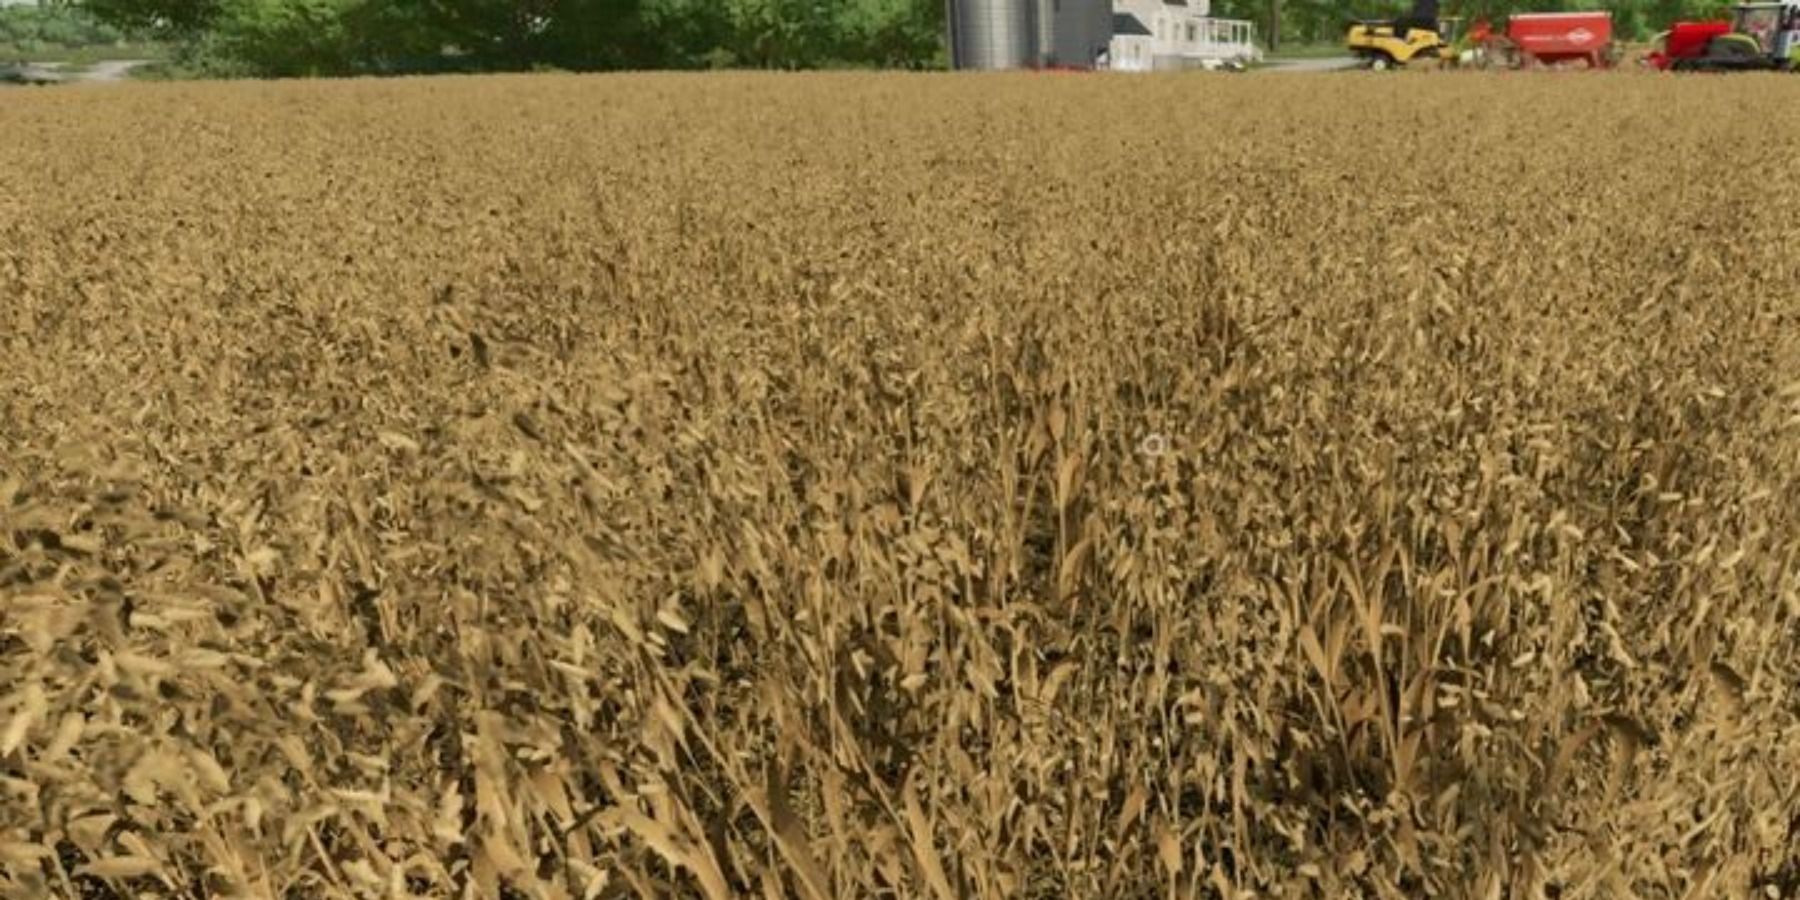 Barley crops